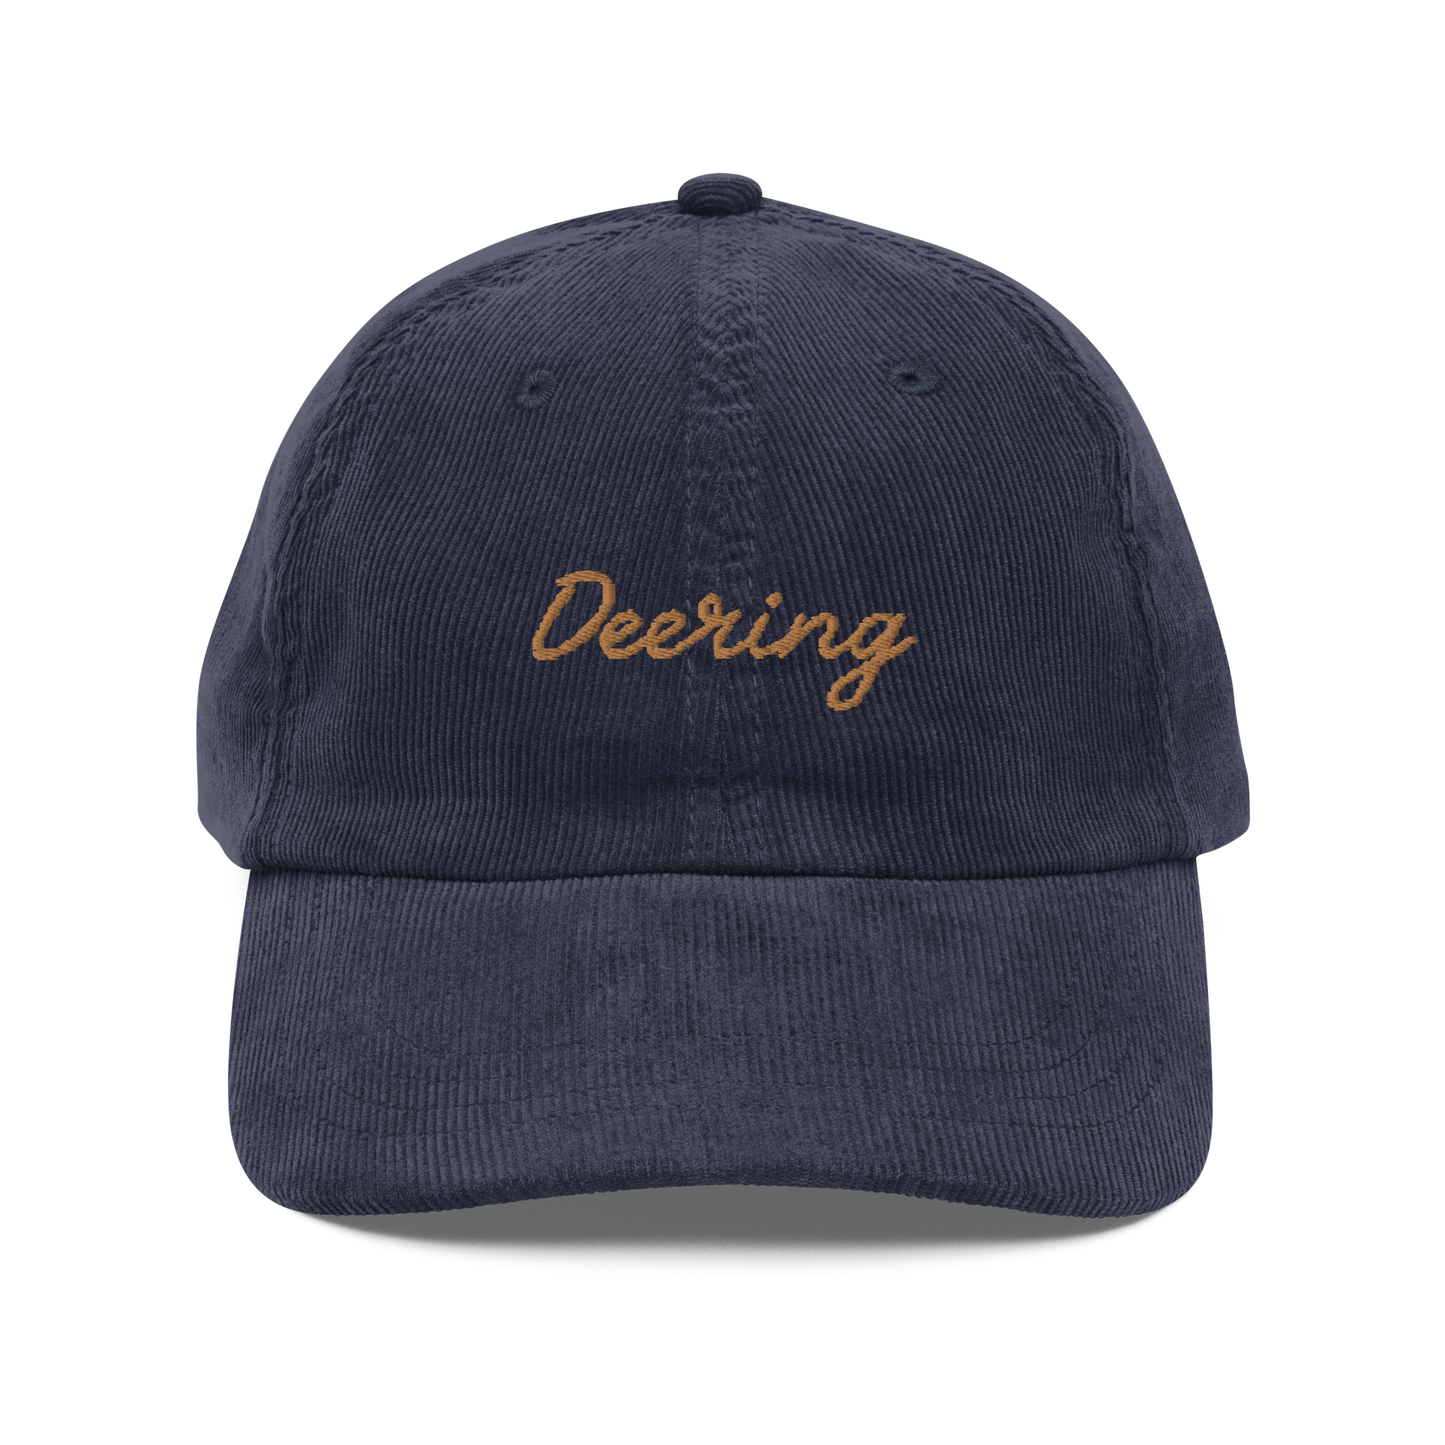 Deering Corduroy Dad Hat